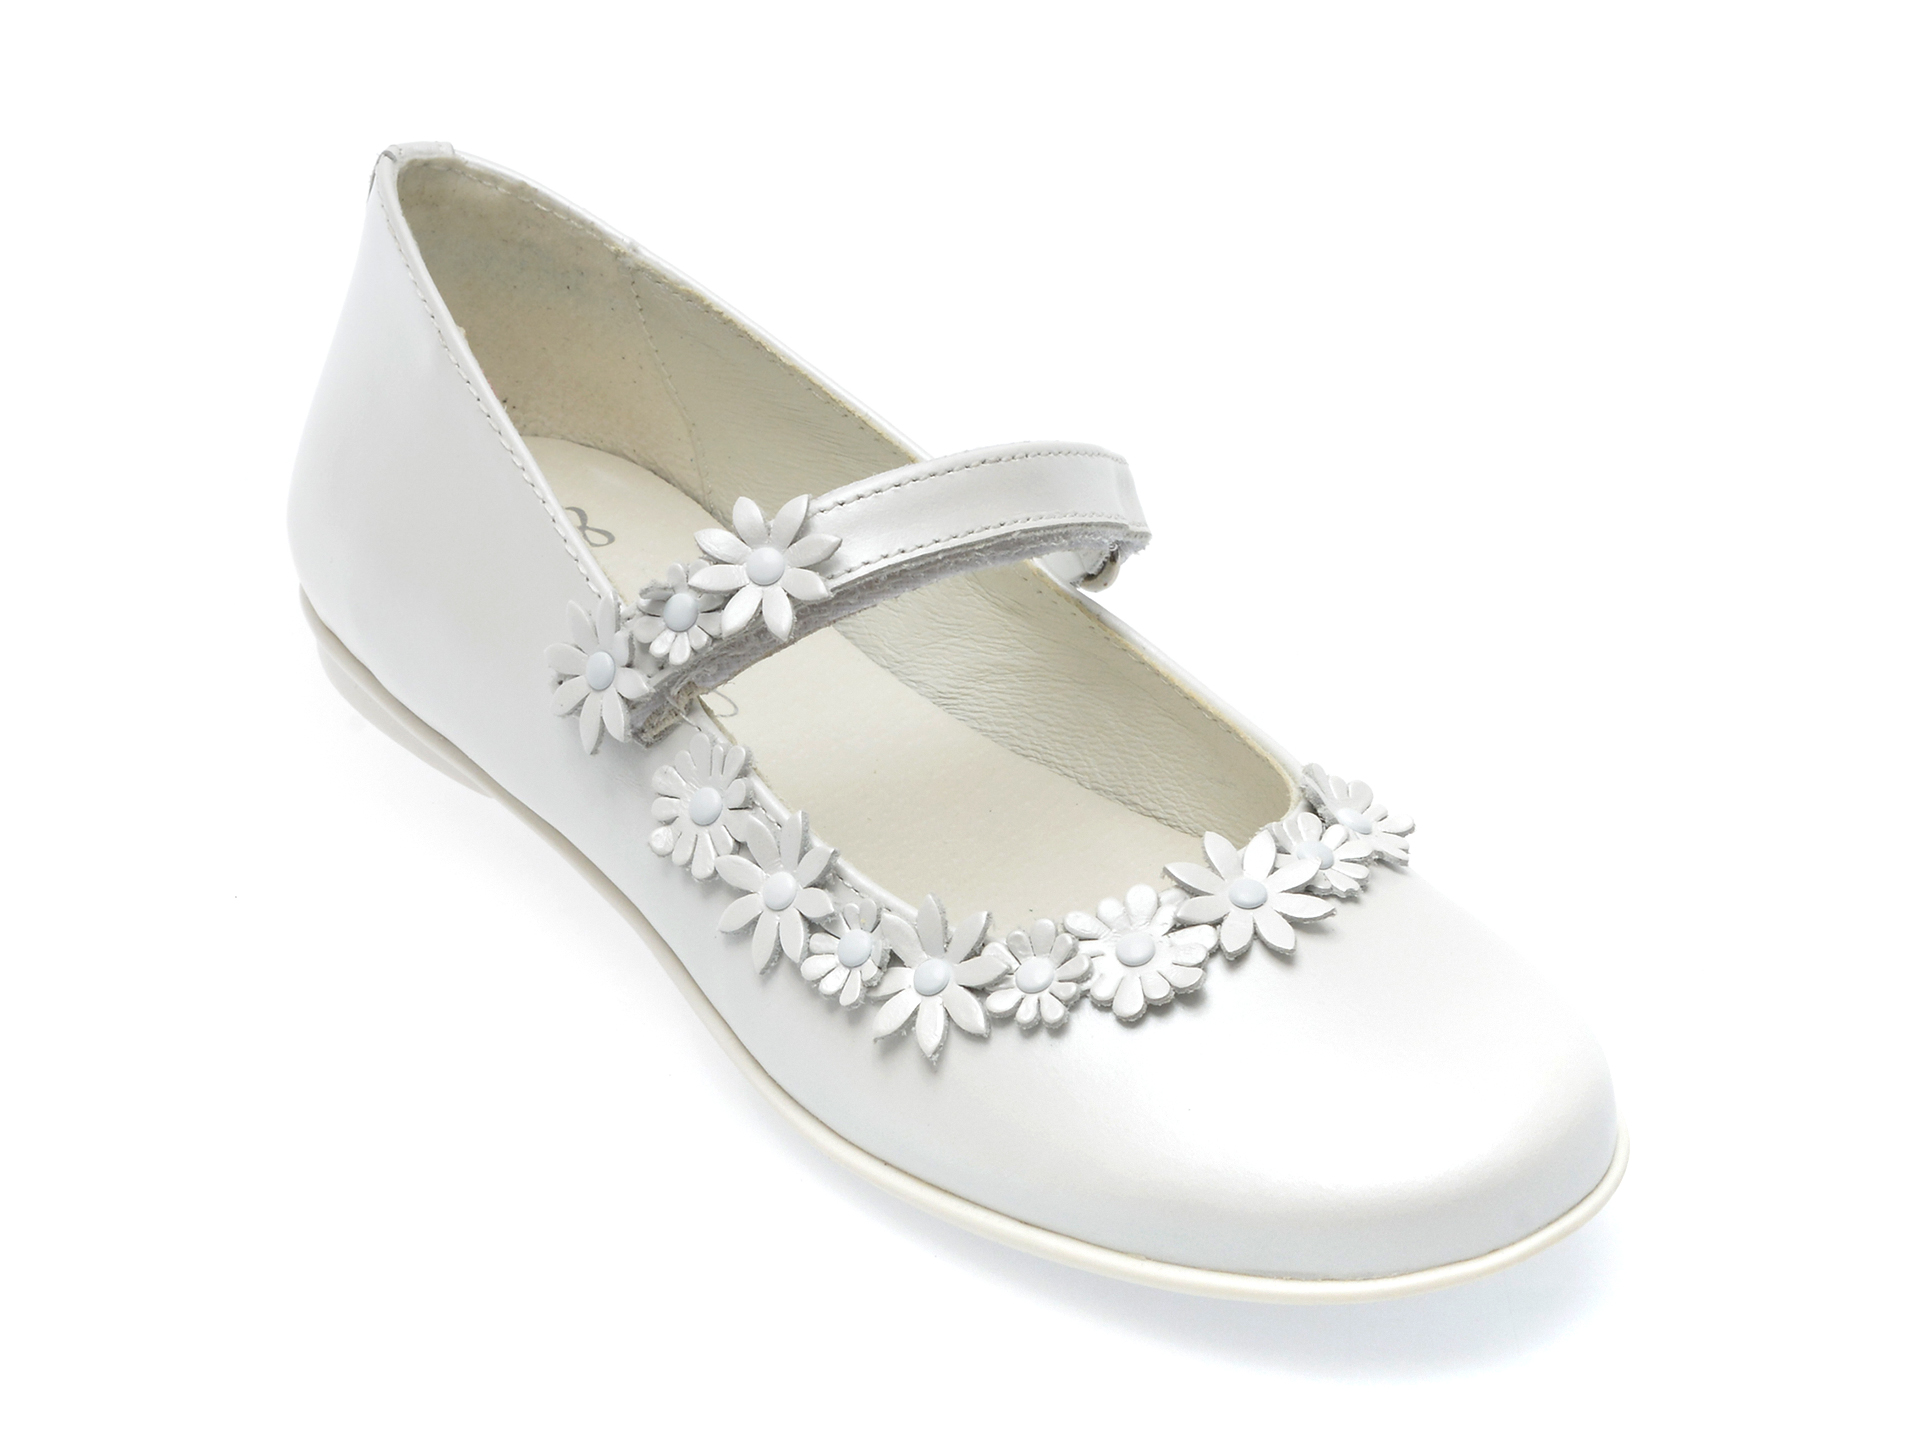 Pantofi PRIMIGI albi, 39201, din piele naturala /copii/incaltaminte